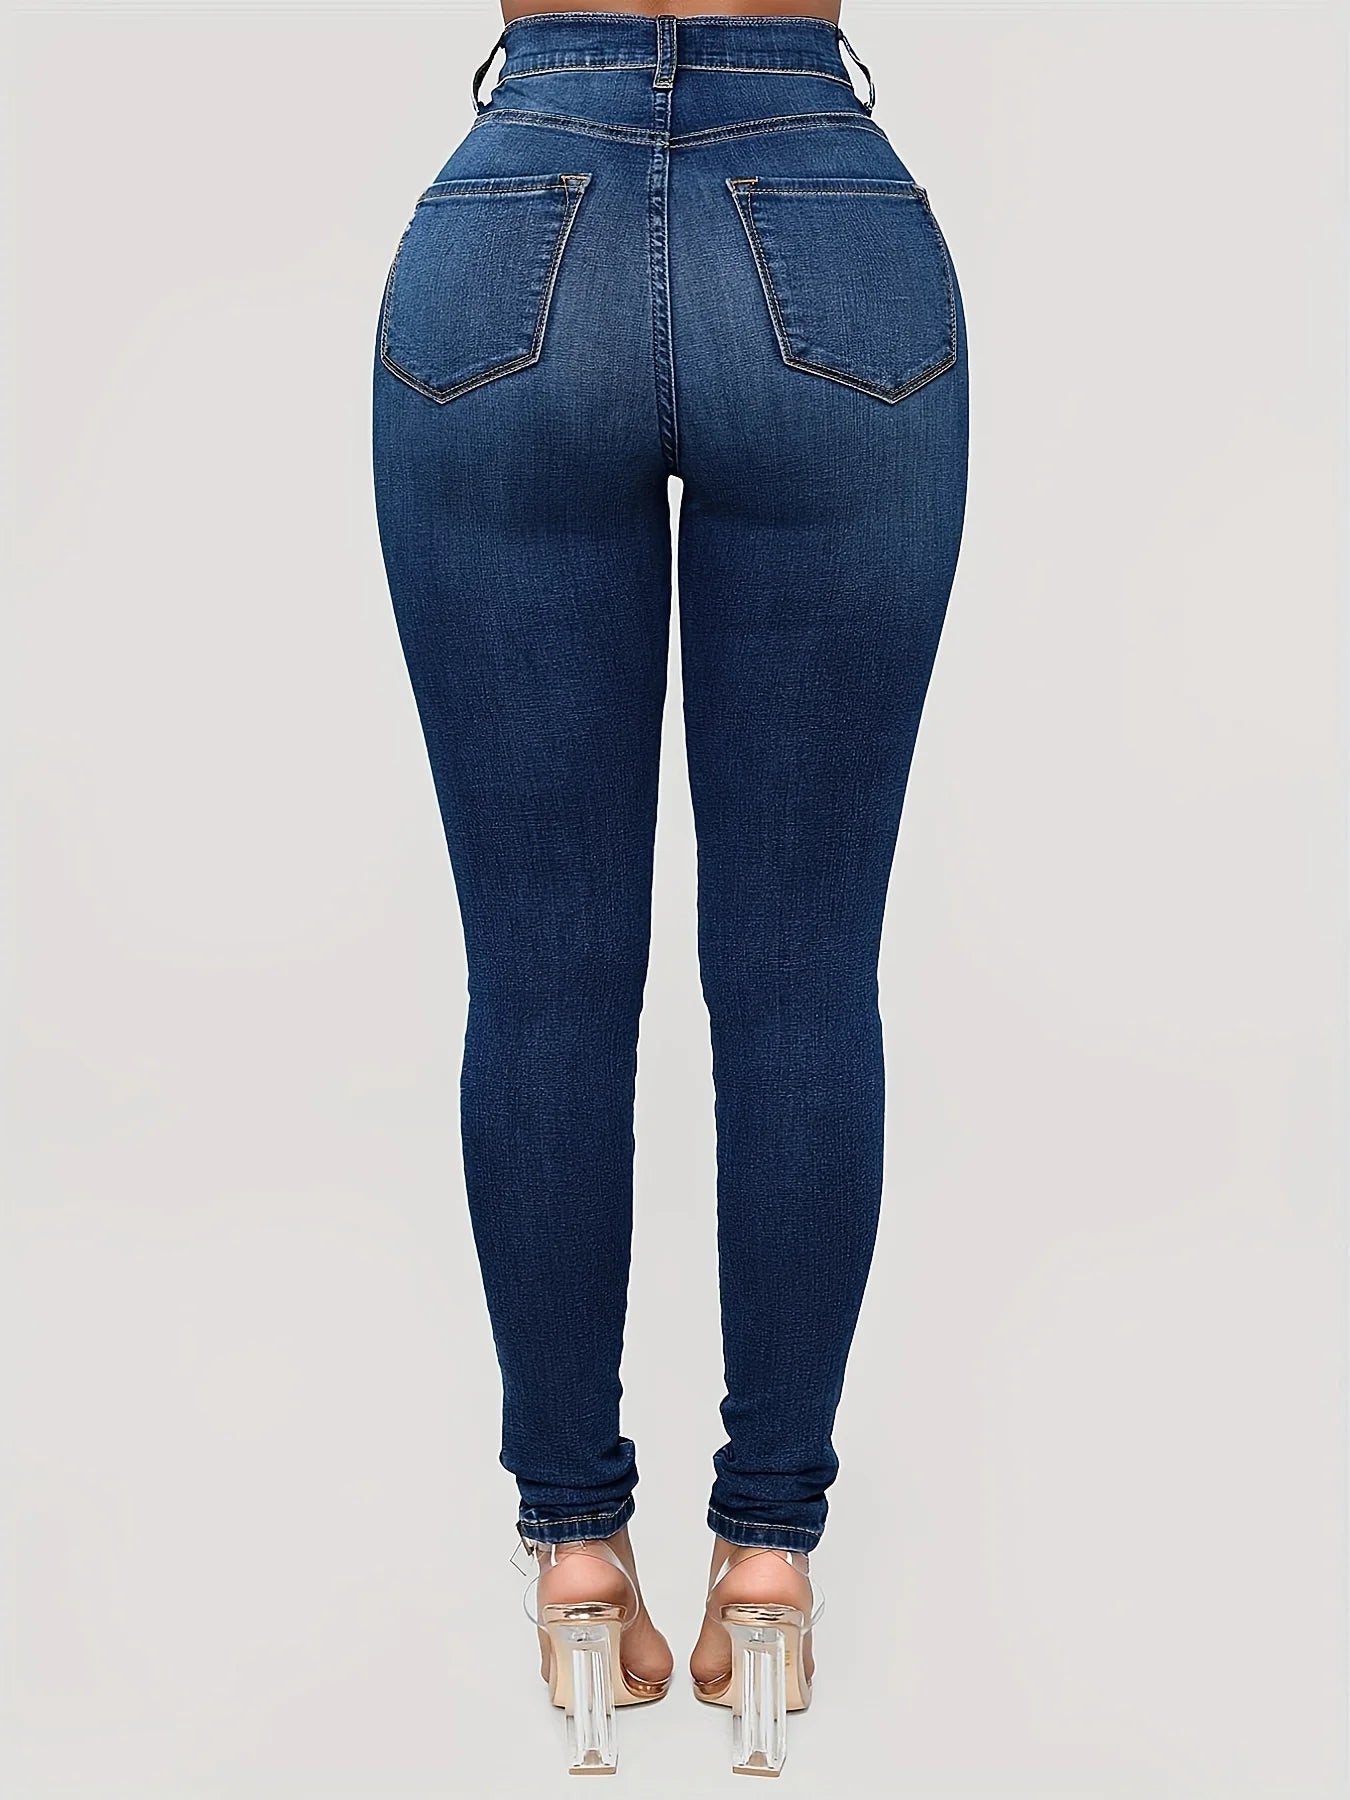 Amy Fashion - Plain High Waist Skinny High Rise Slim Fit Slash Pockets Casual Denim Jean